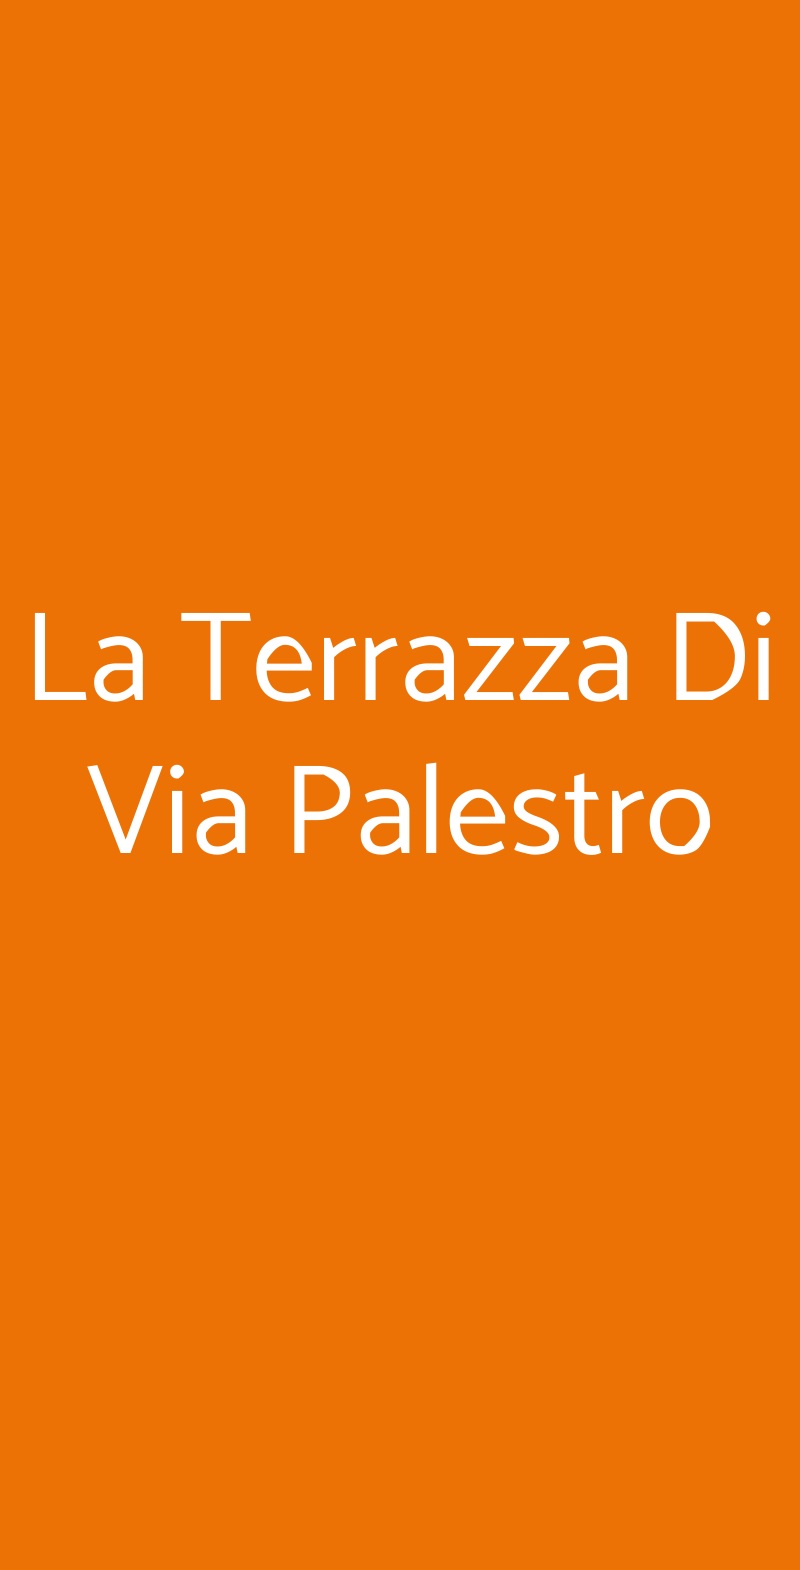 La Terrazza Di Via Palestro Milano menù 1 pagina